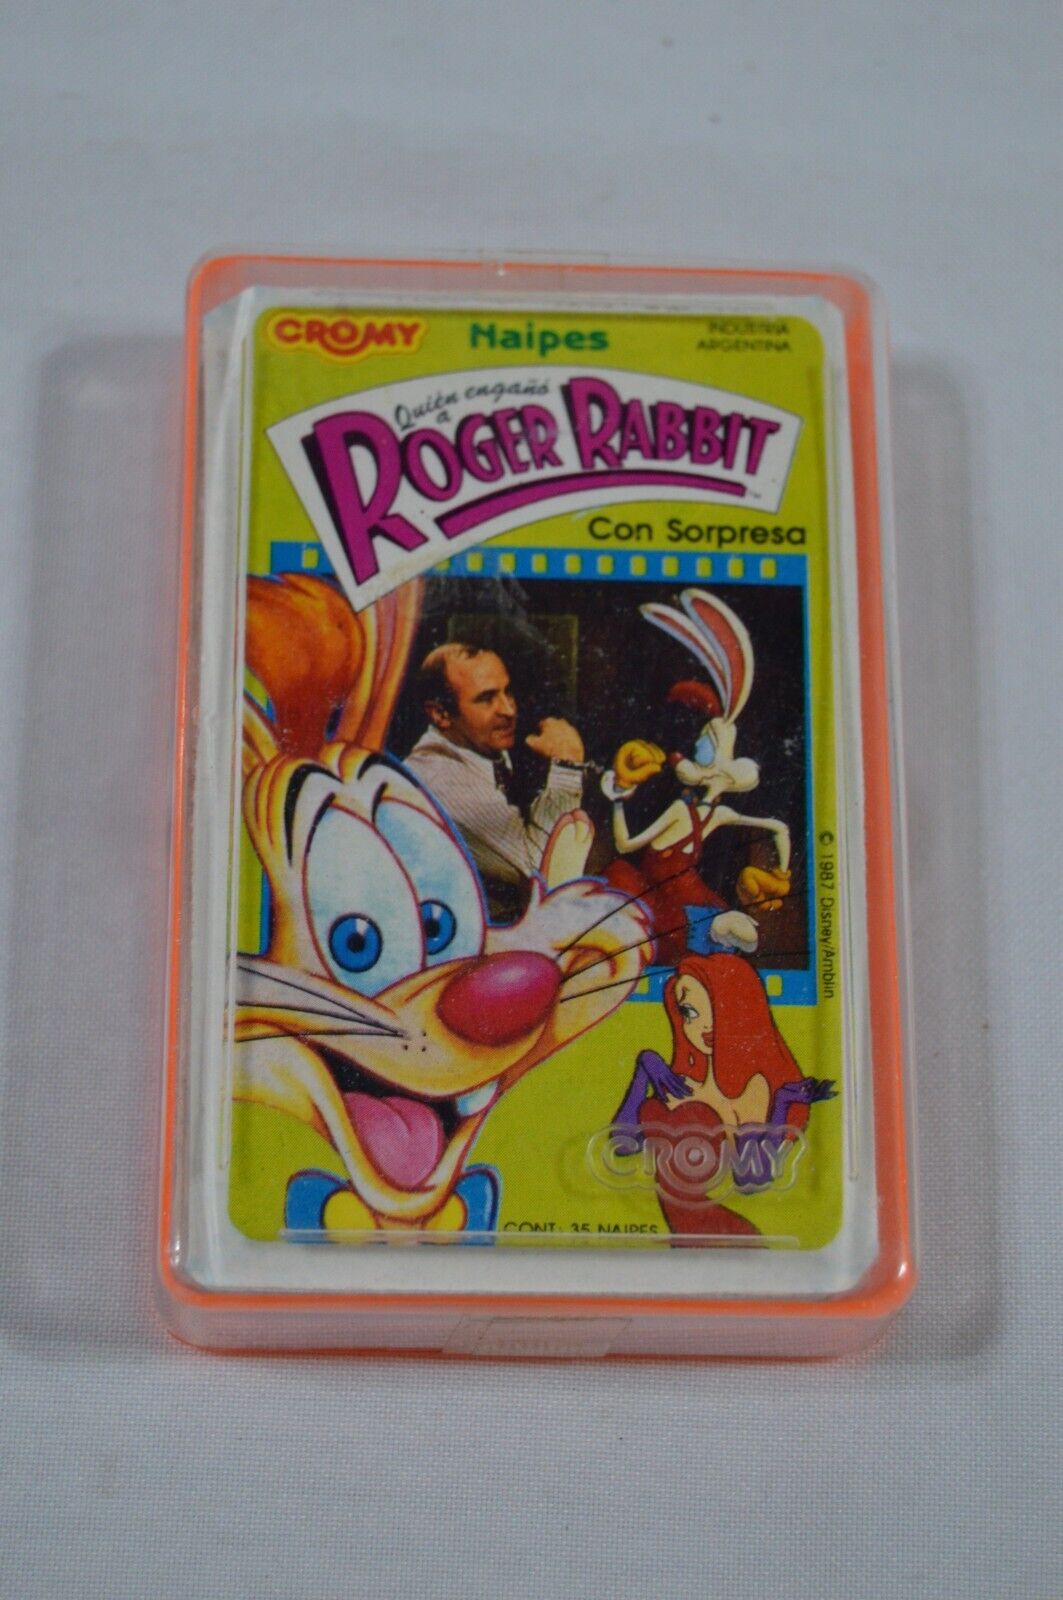 RARE Who Framed Roger Rabbit Deck of Cards Cromy 1988 ARGENTINA NOS ORIGINAL